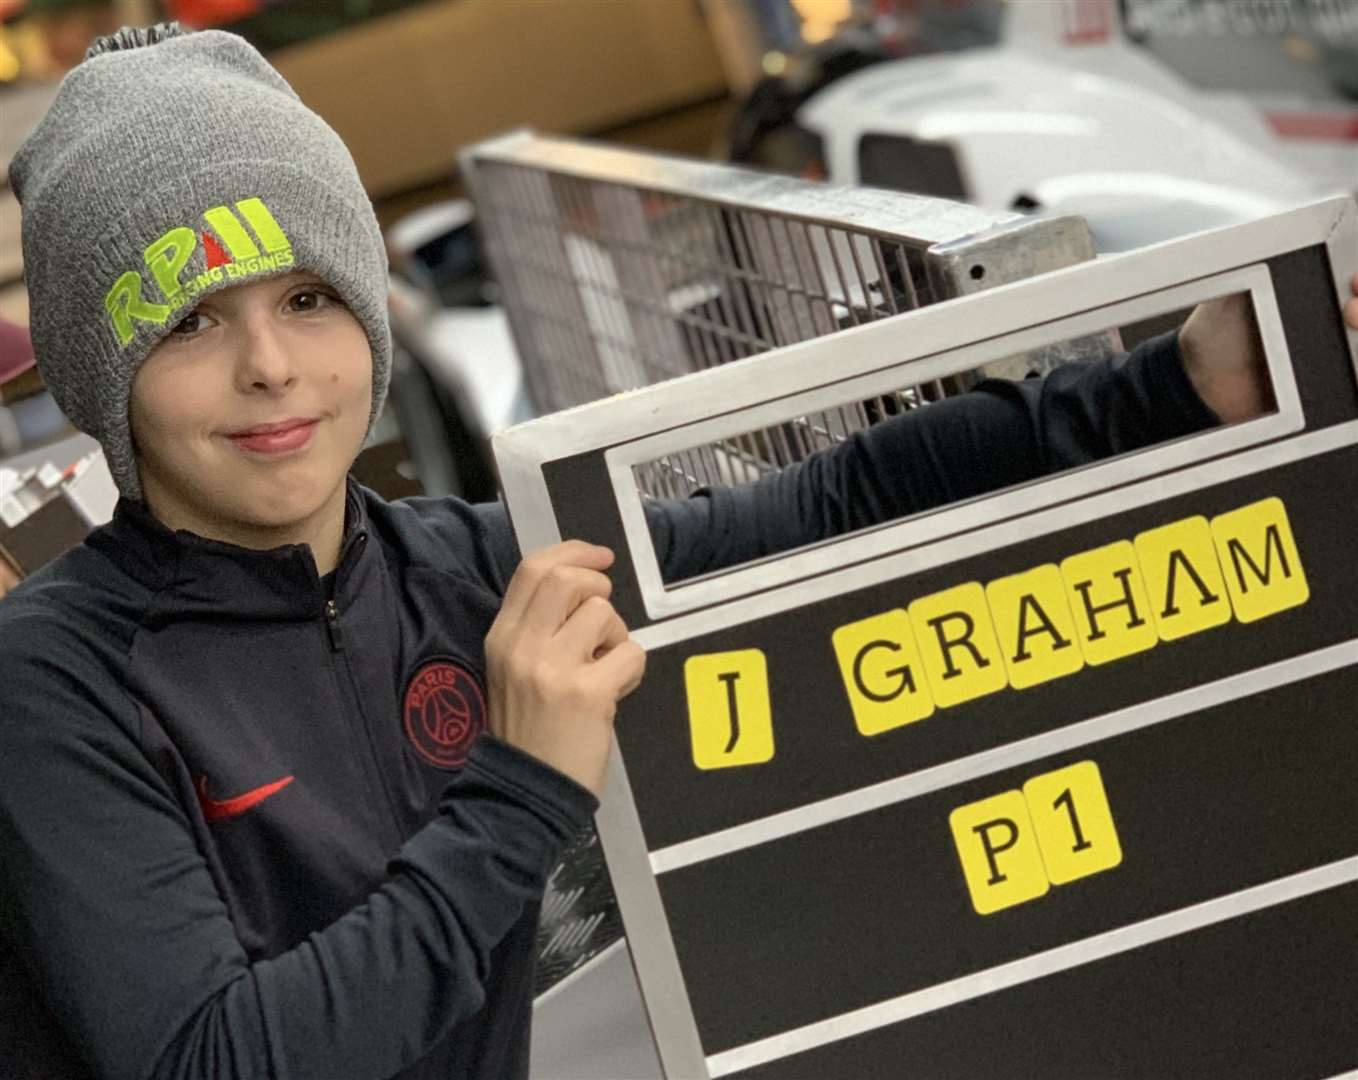 Joshua Graham, karting P1 in Sunderland (42457443)